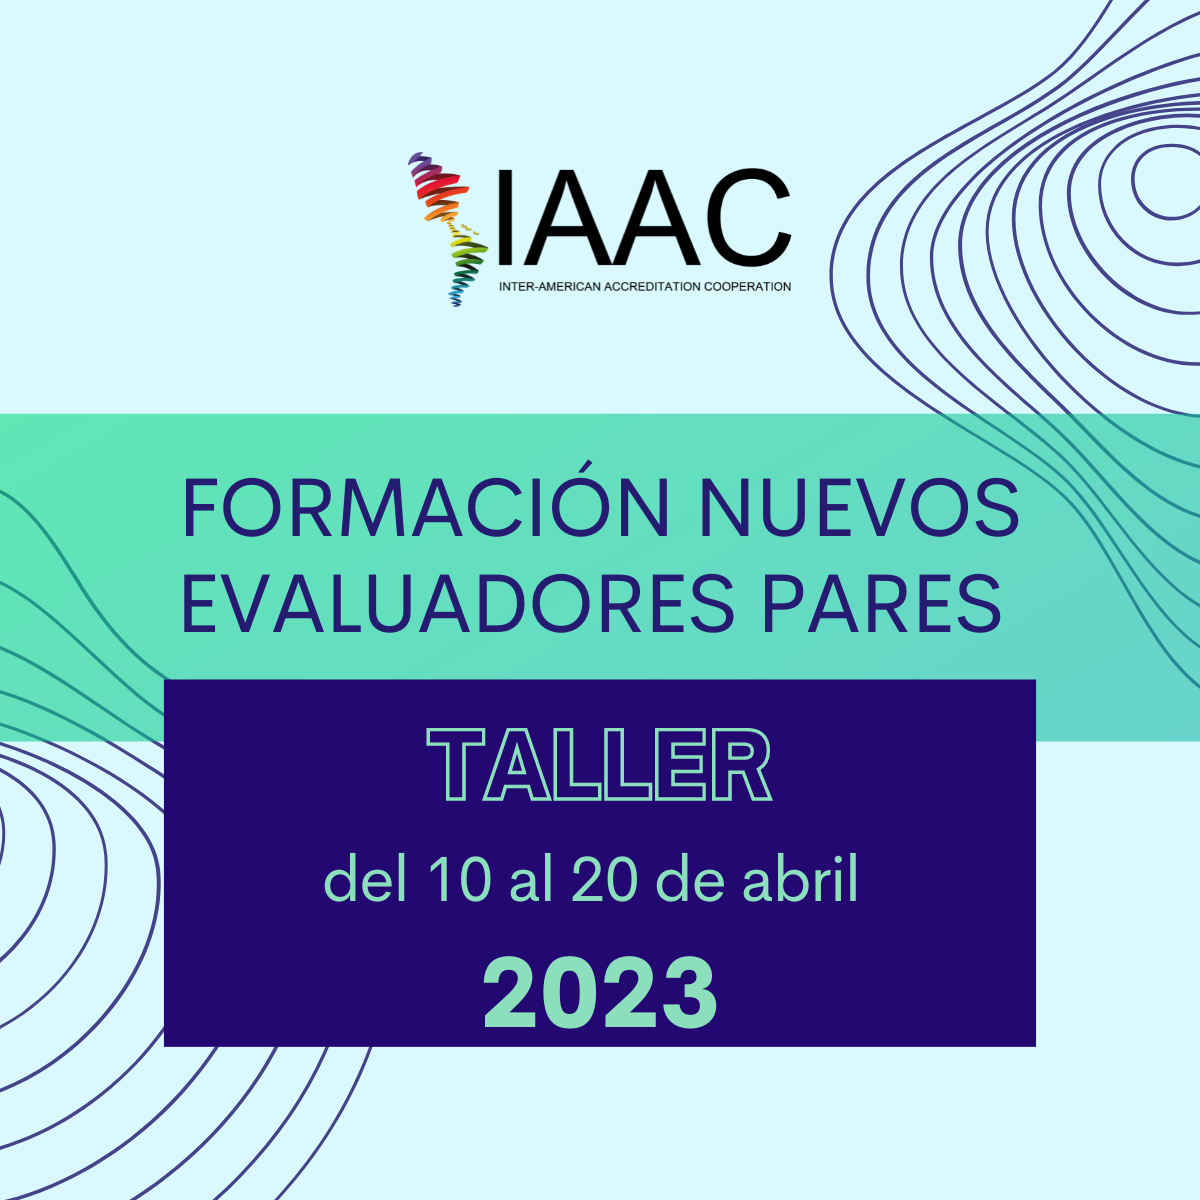 Taller Formación de Nuevos Evaluadores Pares IAAC